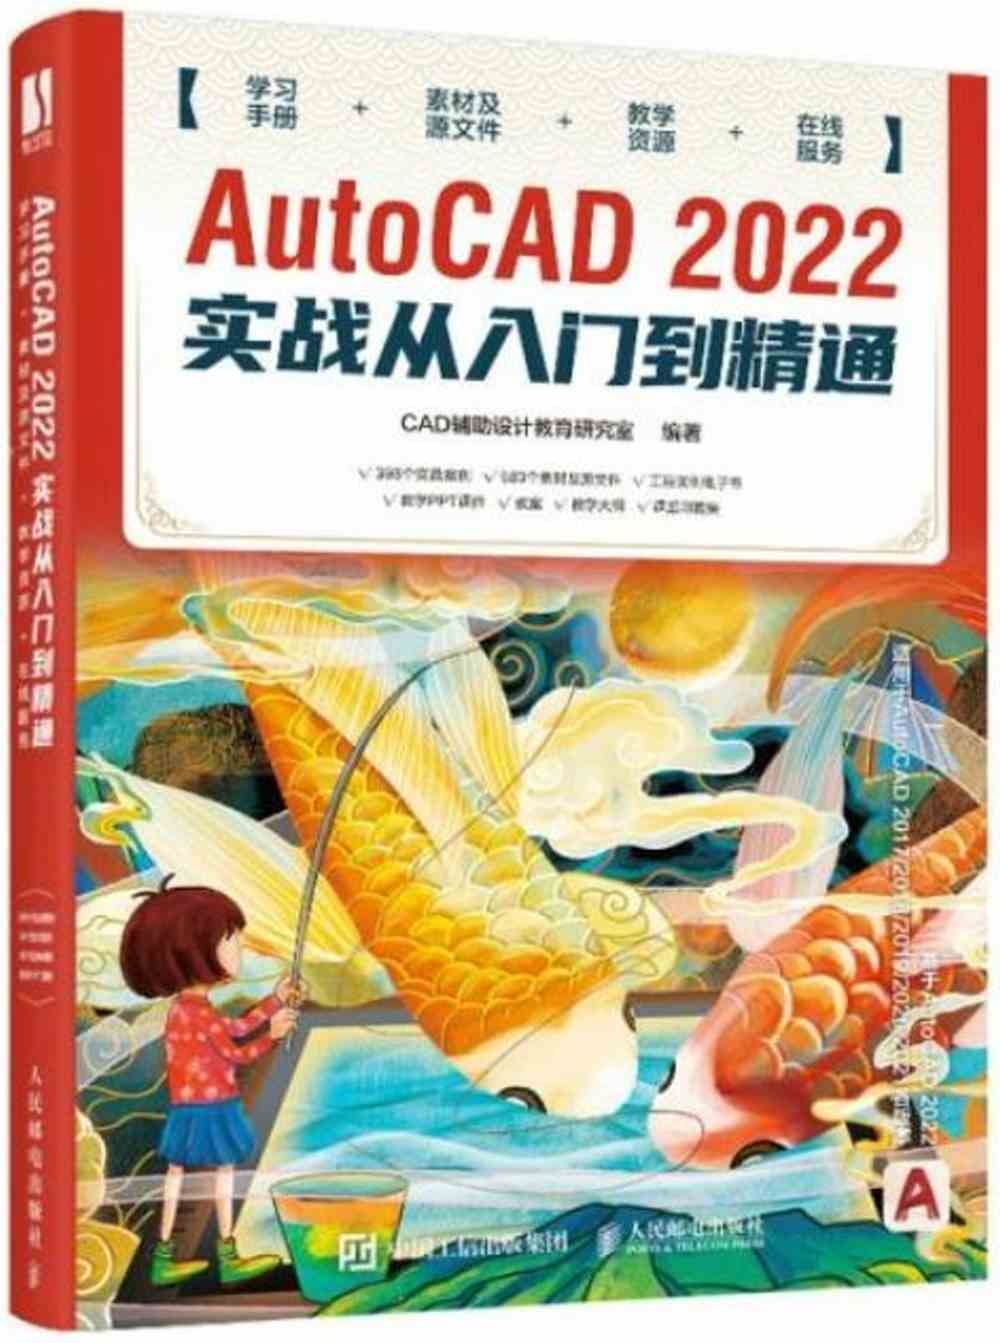 AutoCAD 2022實戰從入門到精通